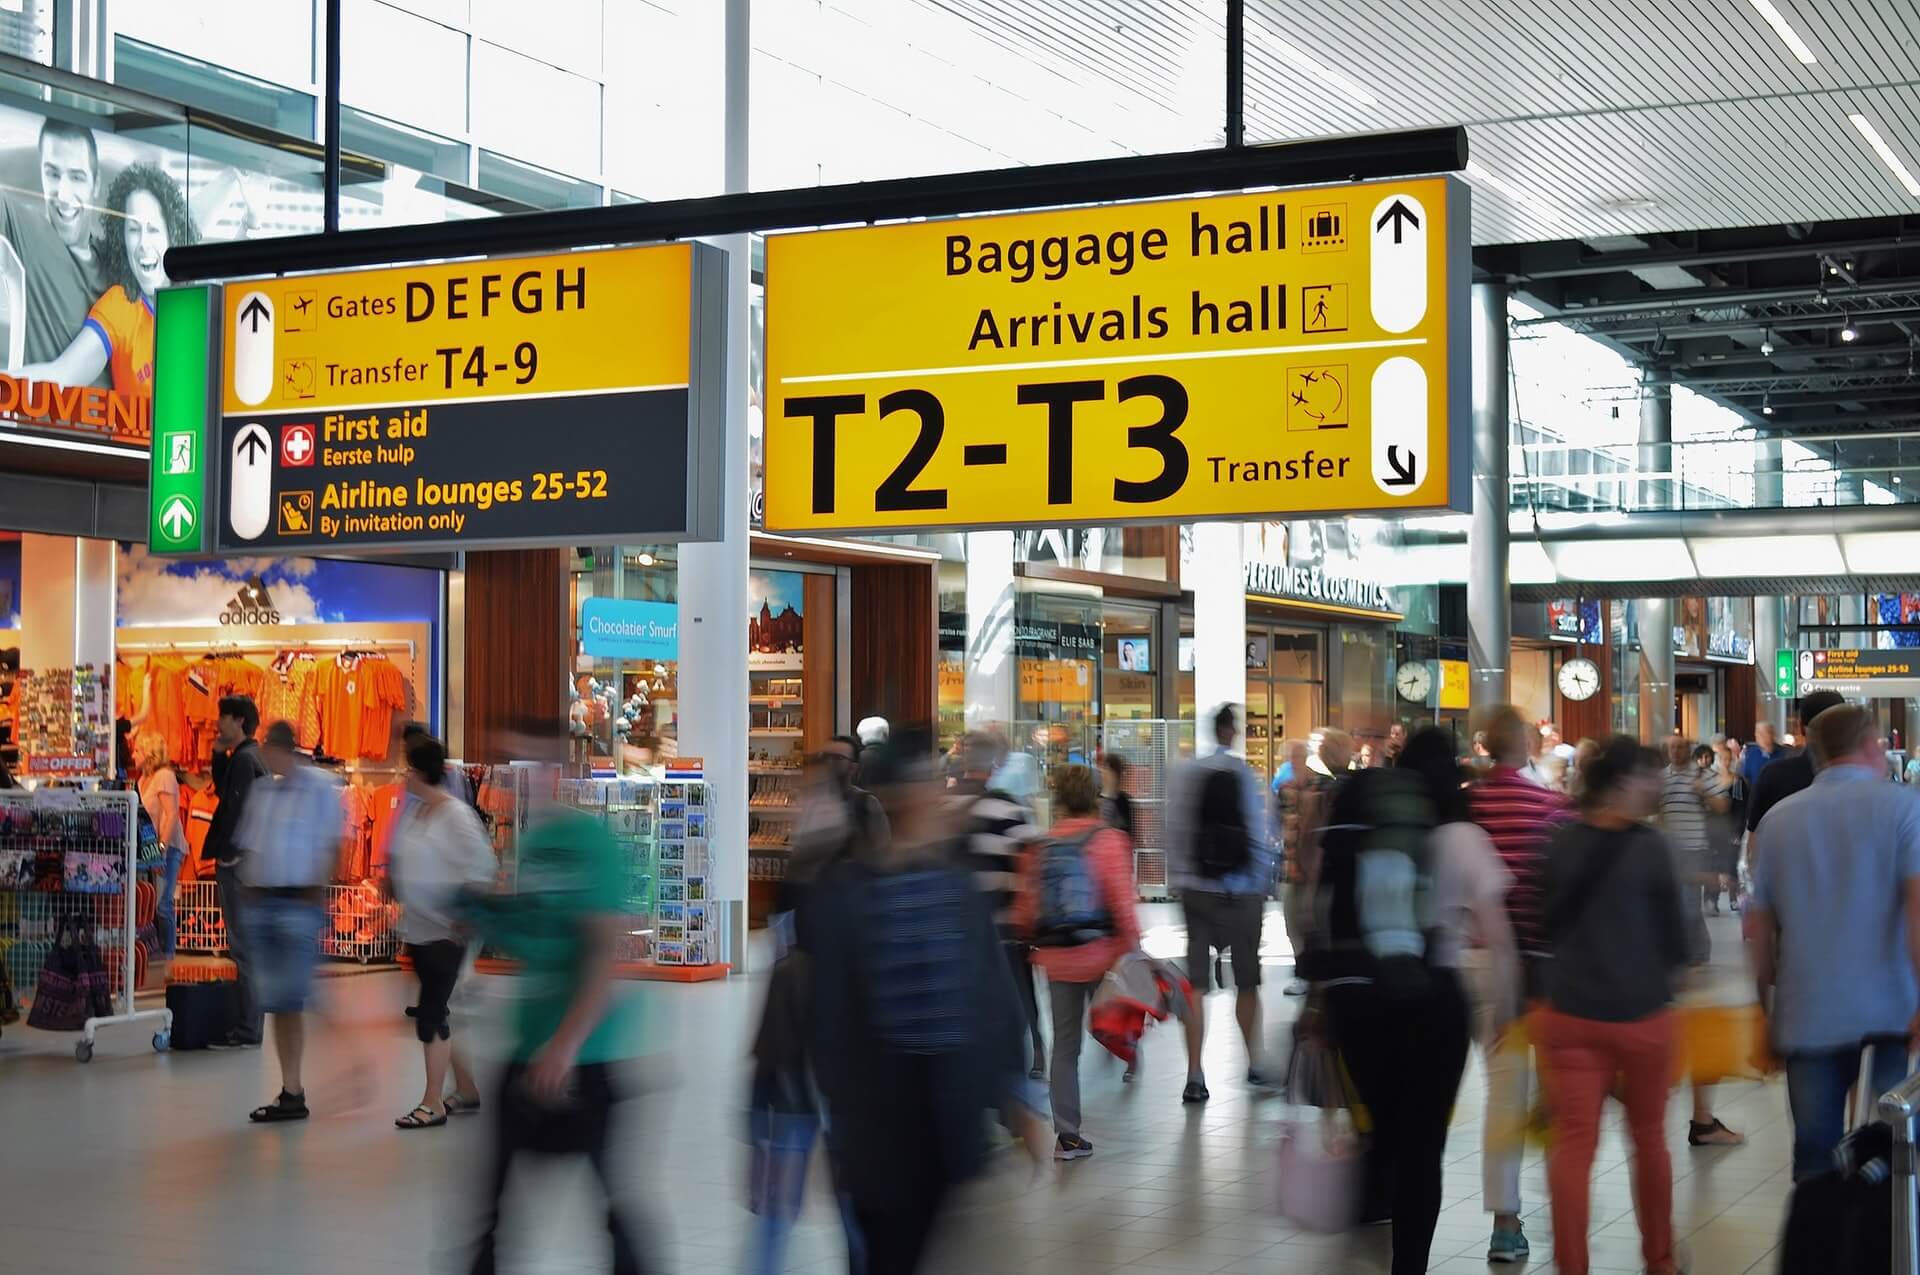 Highland kontoførende sæt Carry on håndbagage i 2023 - Tips og info om at tage rygsækken med op i  flyet